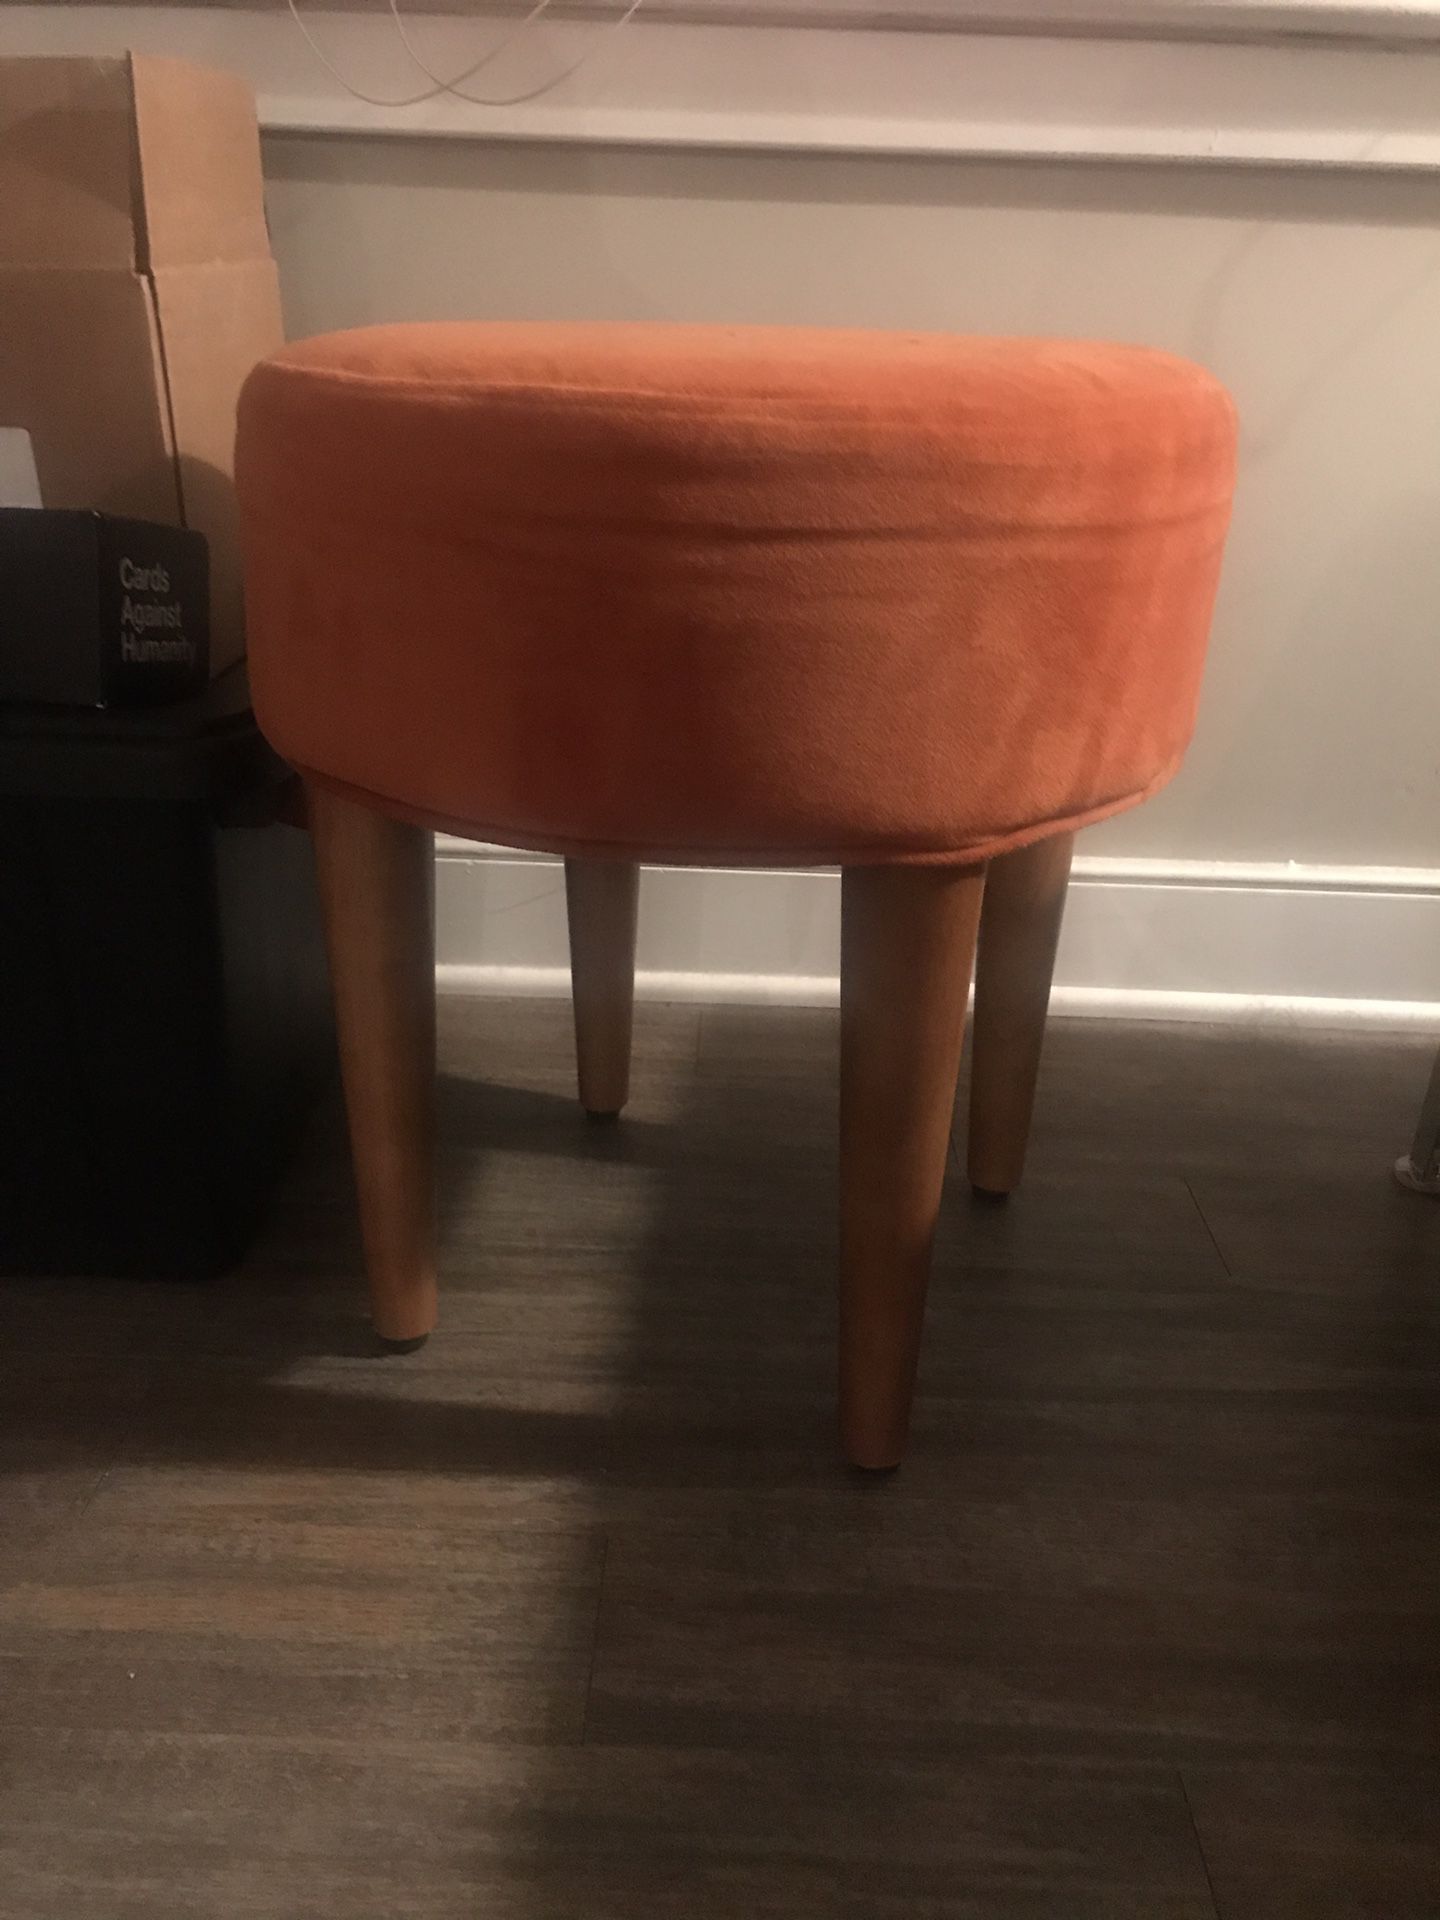 Burnt orange stool